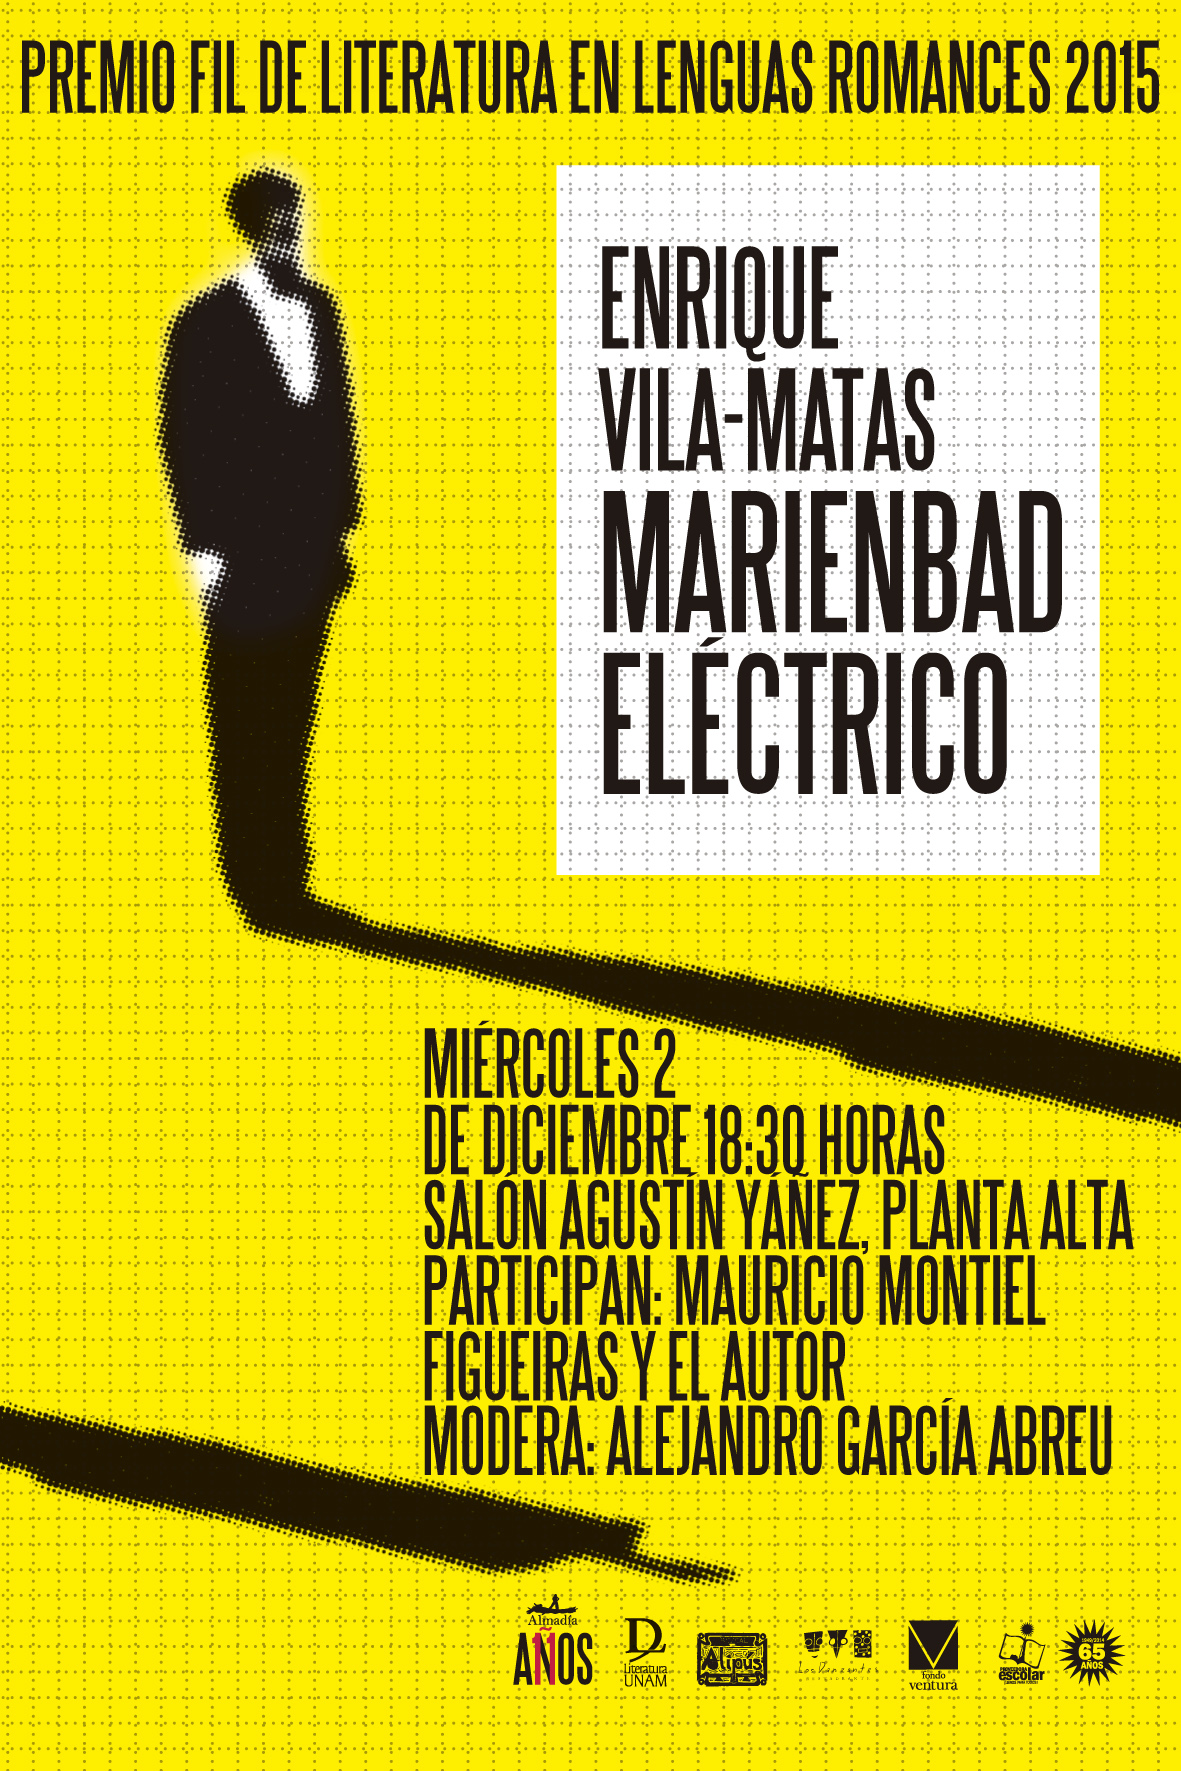 Cartel de la presentación de Marienbad eléctrico
en la Feria Internacional del Libro de
Guadalajara 2015